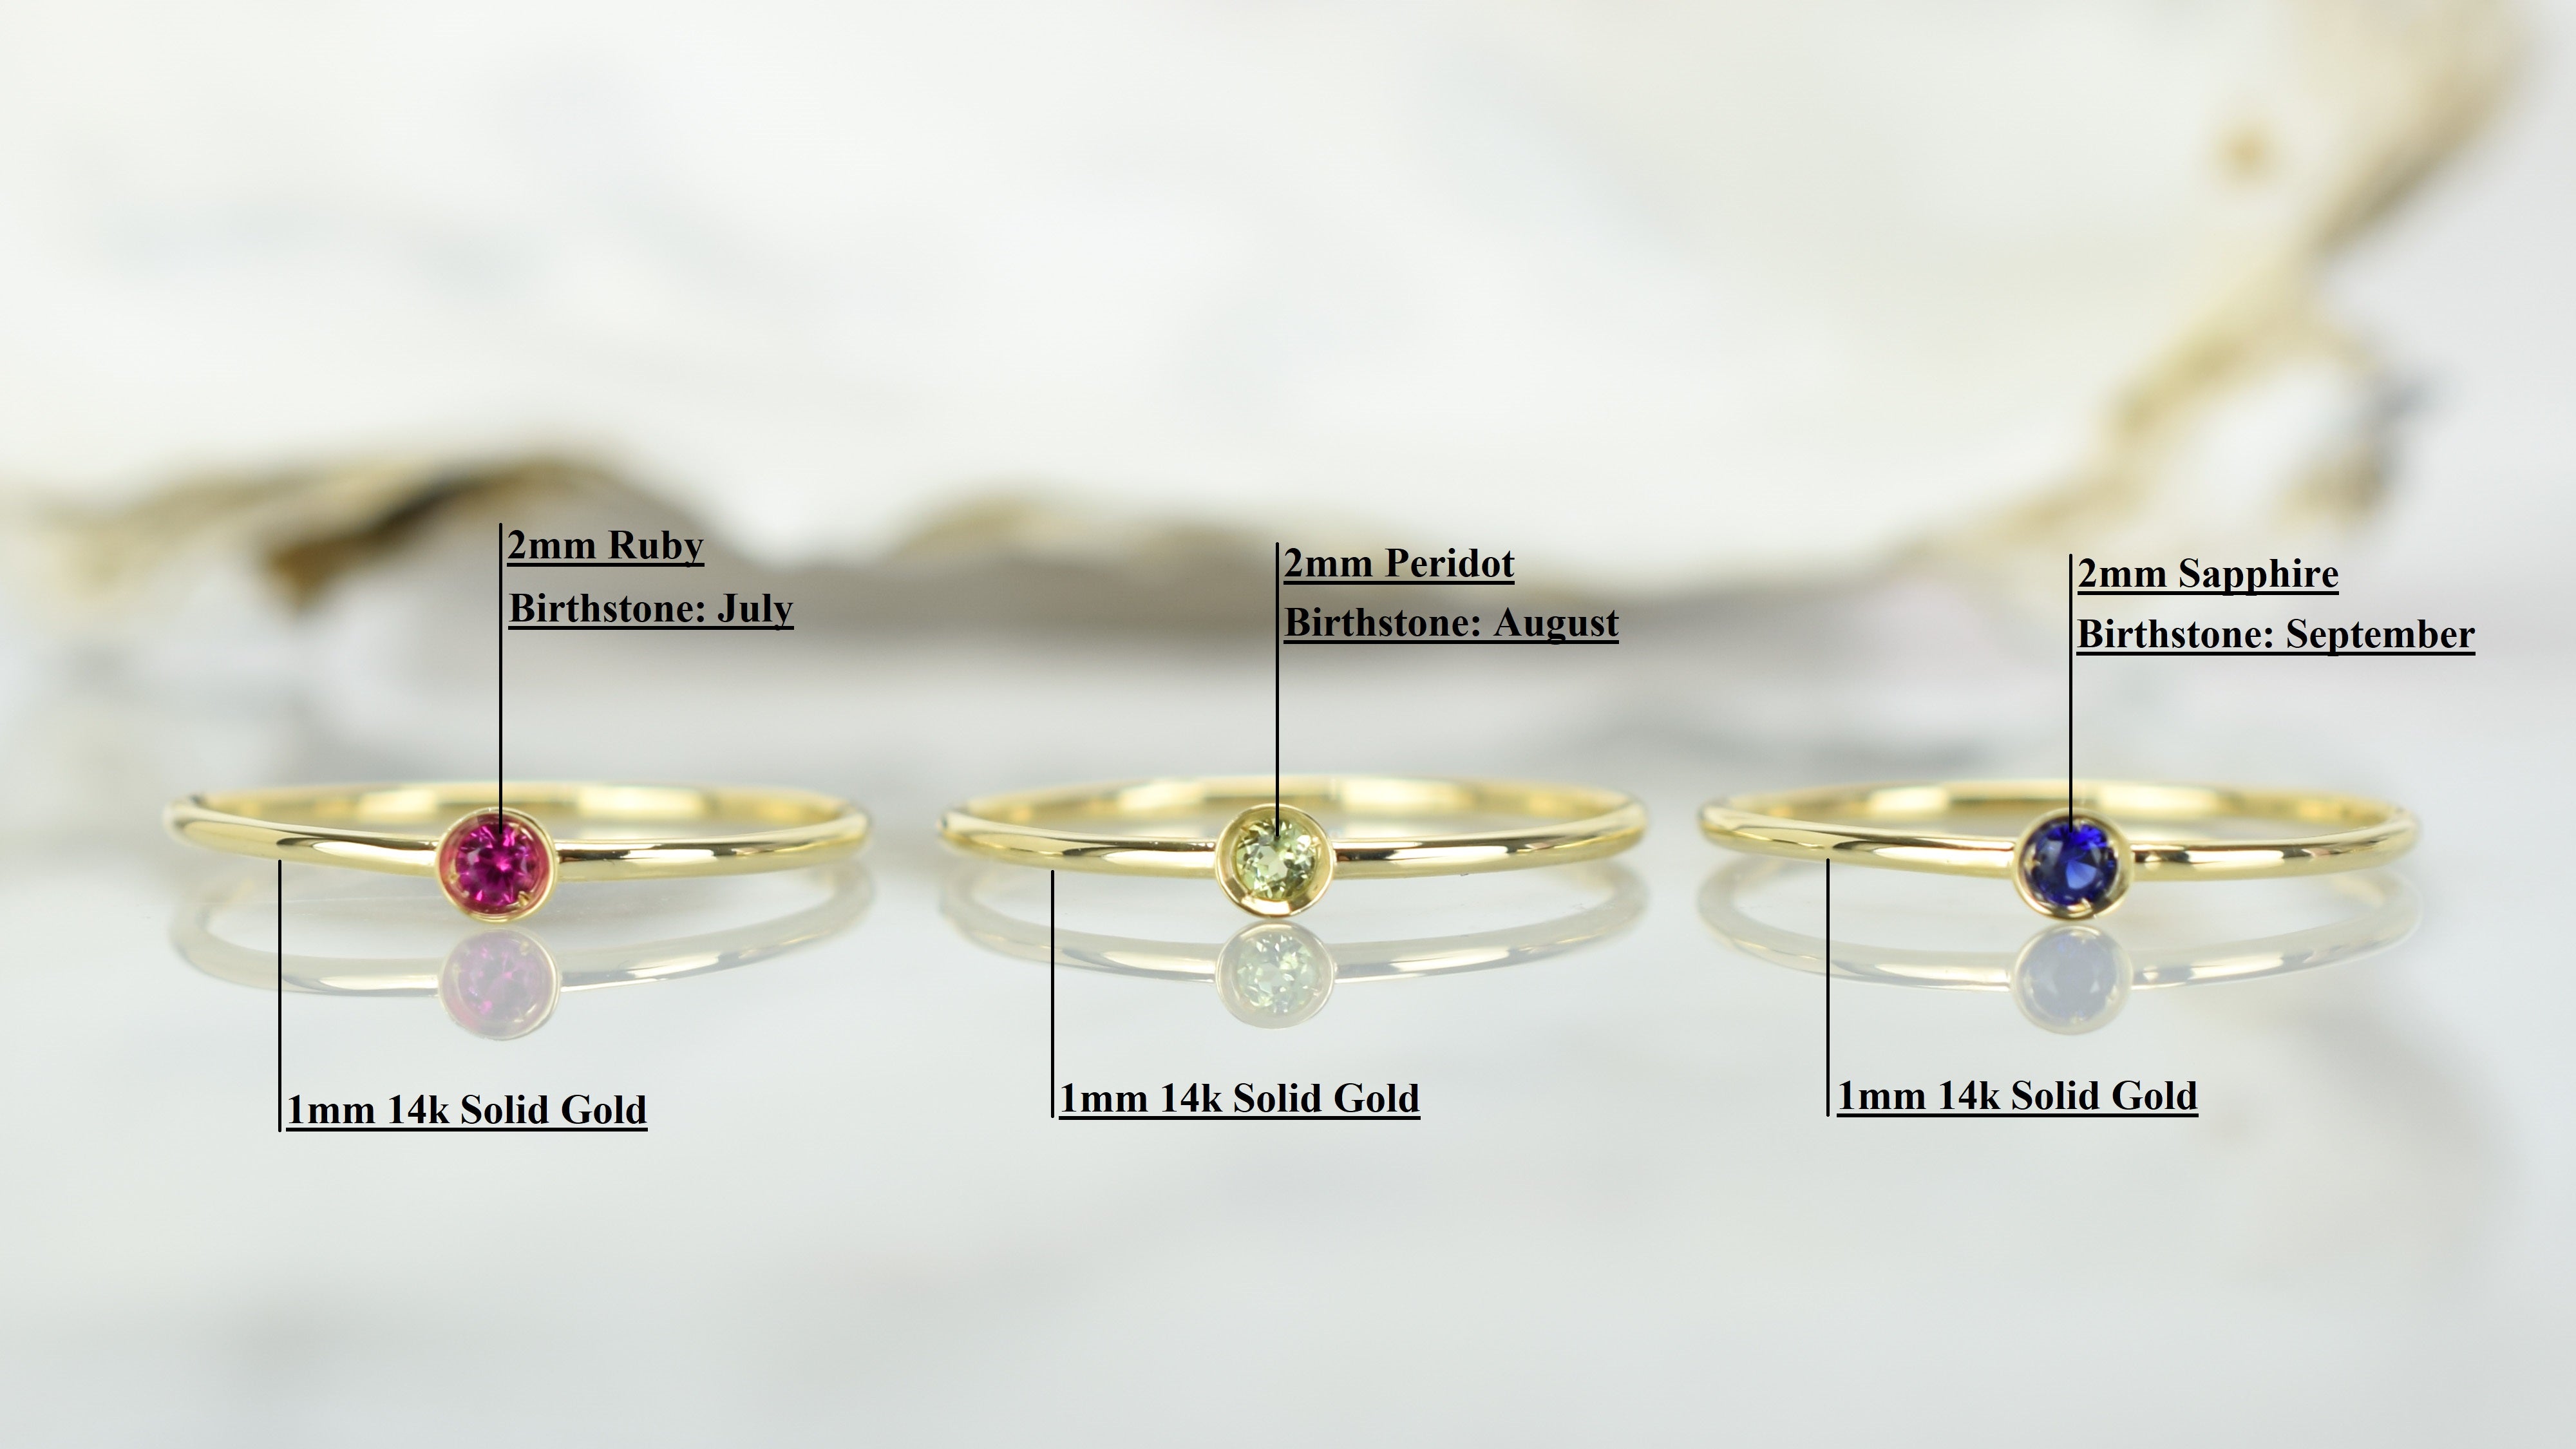 Ring saffier goud, aanschuifring saffier, 14k ring saffier